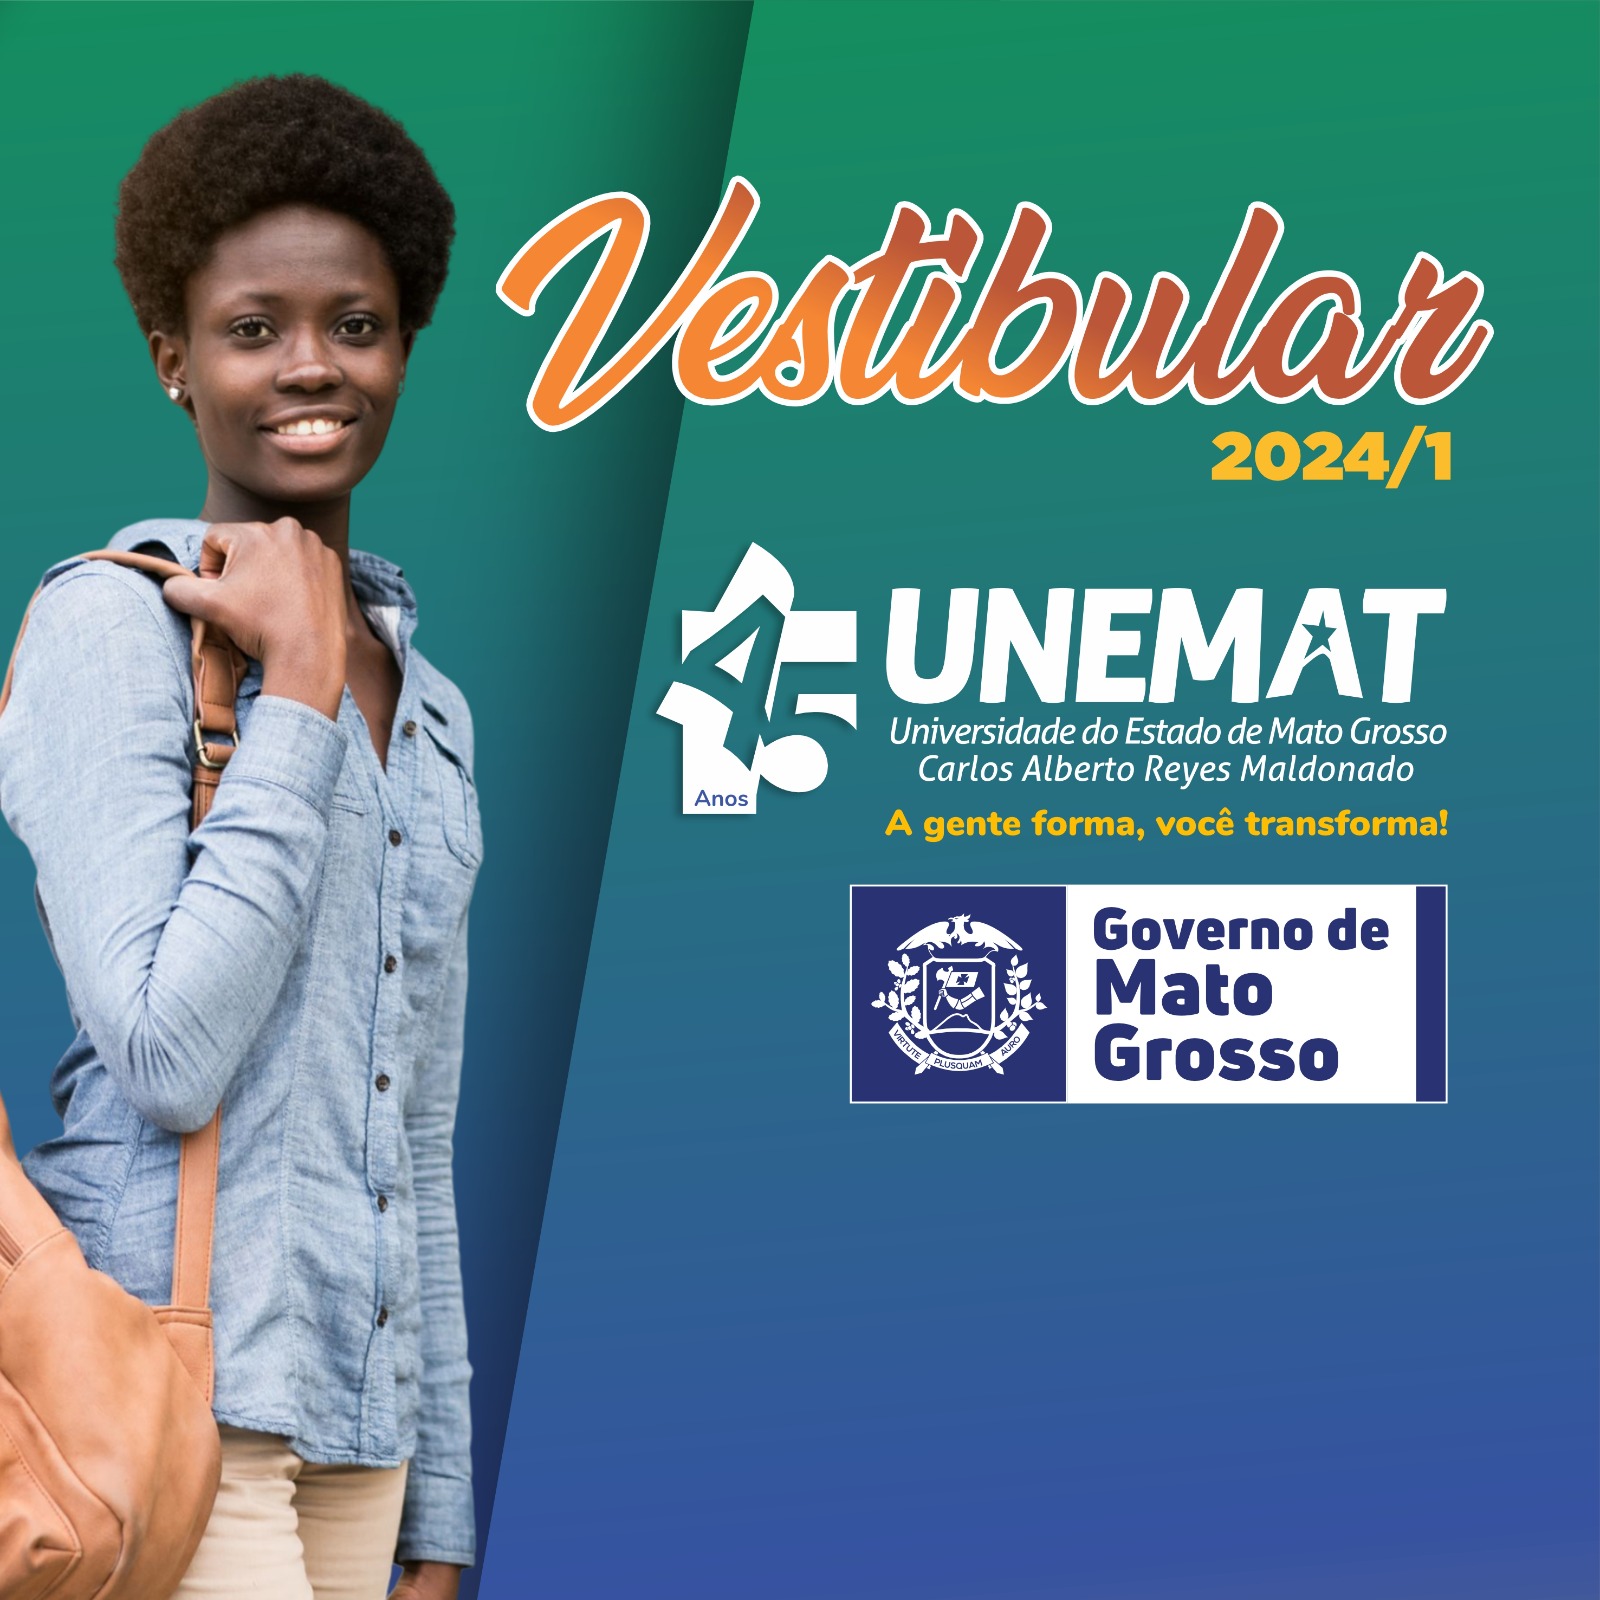 FQM passará a ser chamada de Faculdade UniBRAS do Mato Grosso - Jornal  Quatro Marcos